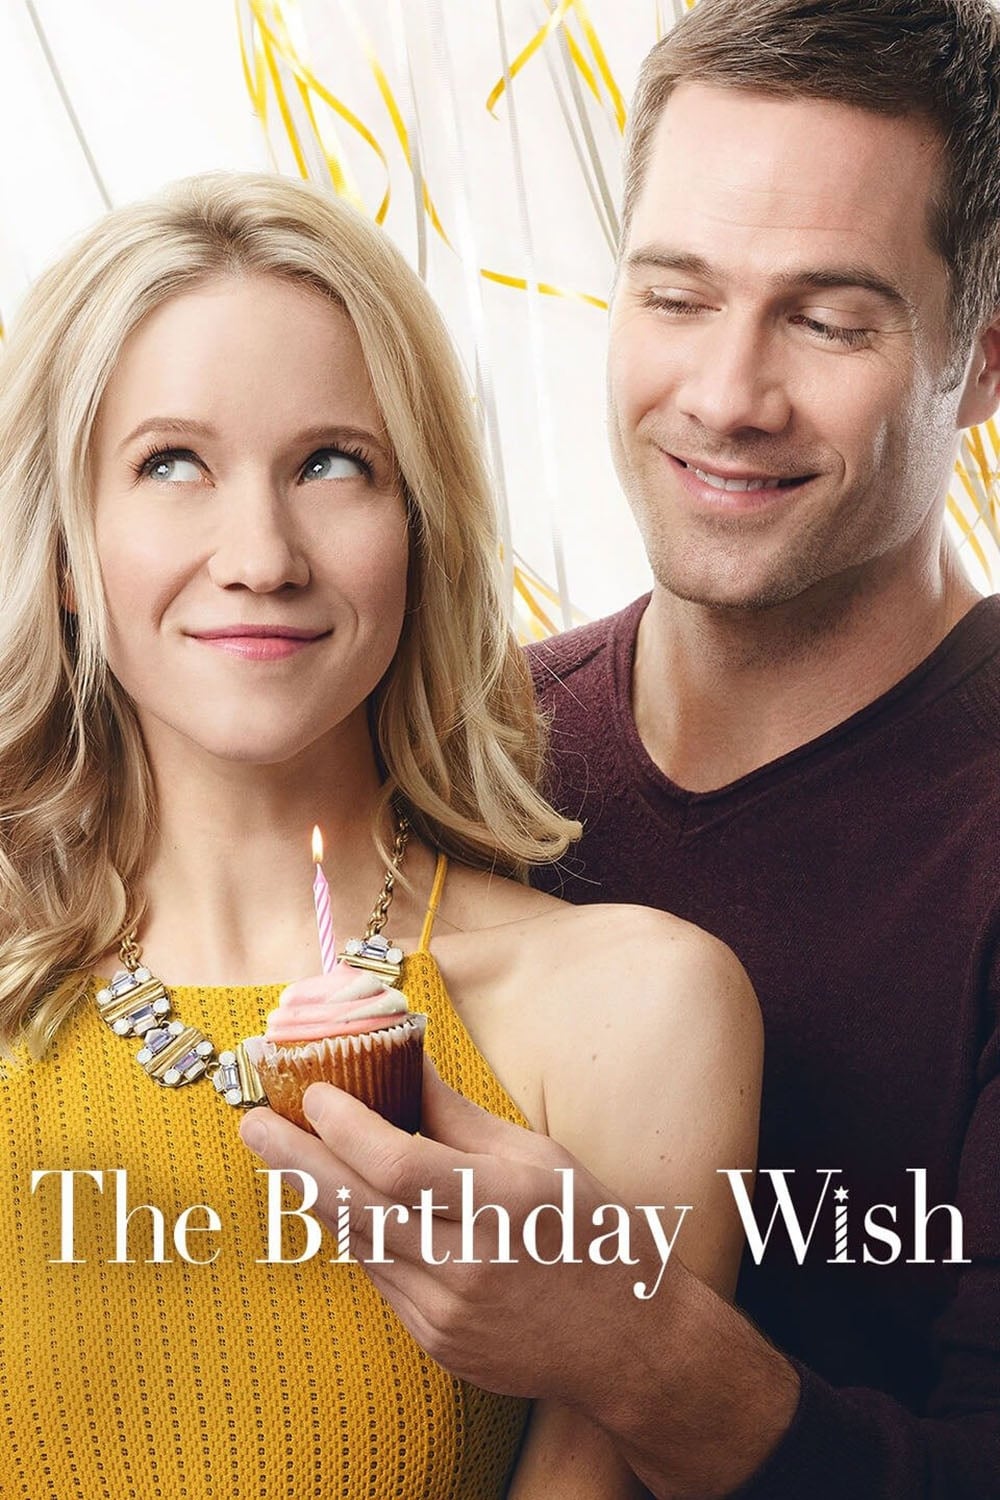 The Birthday Wish (2017)